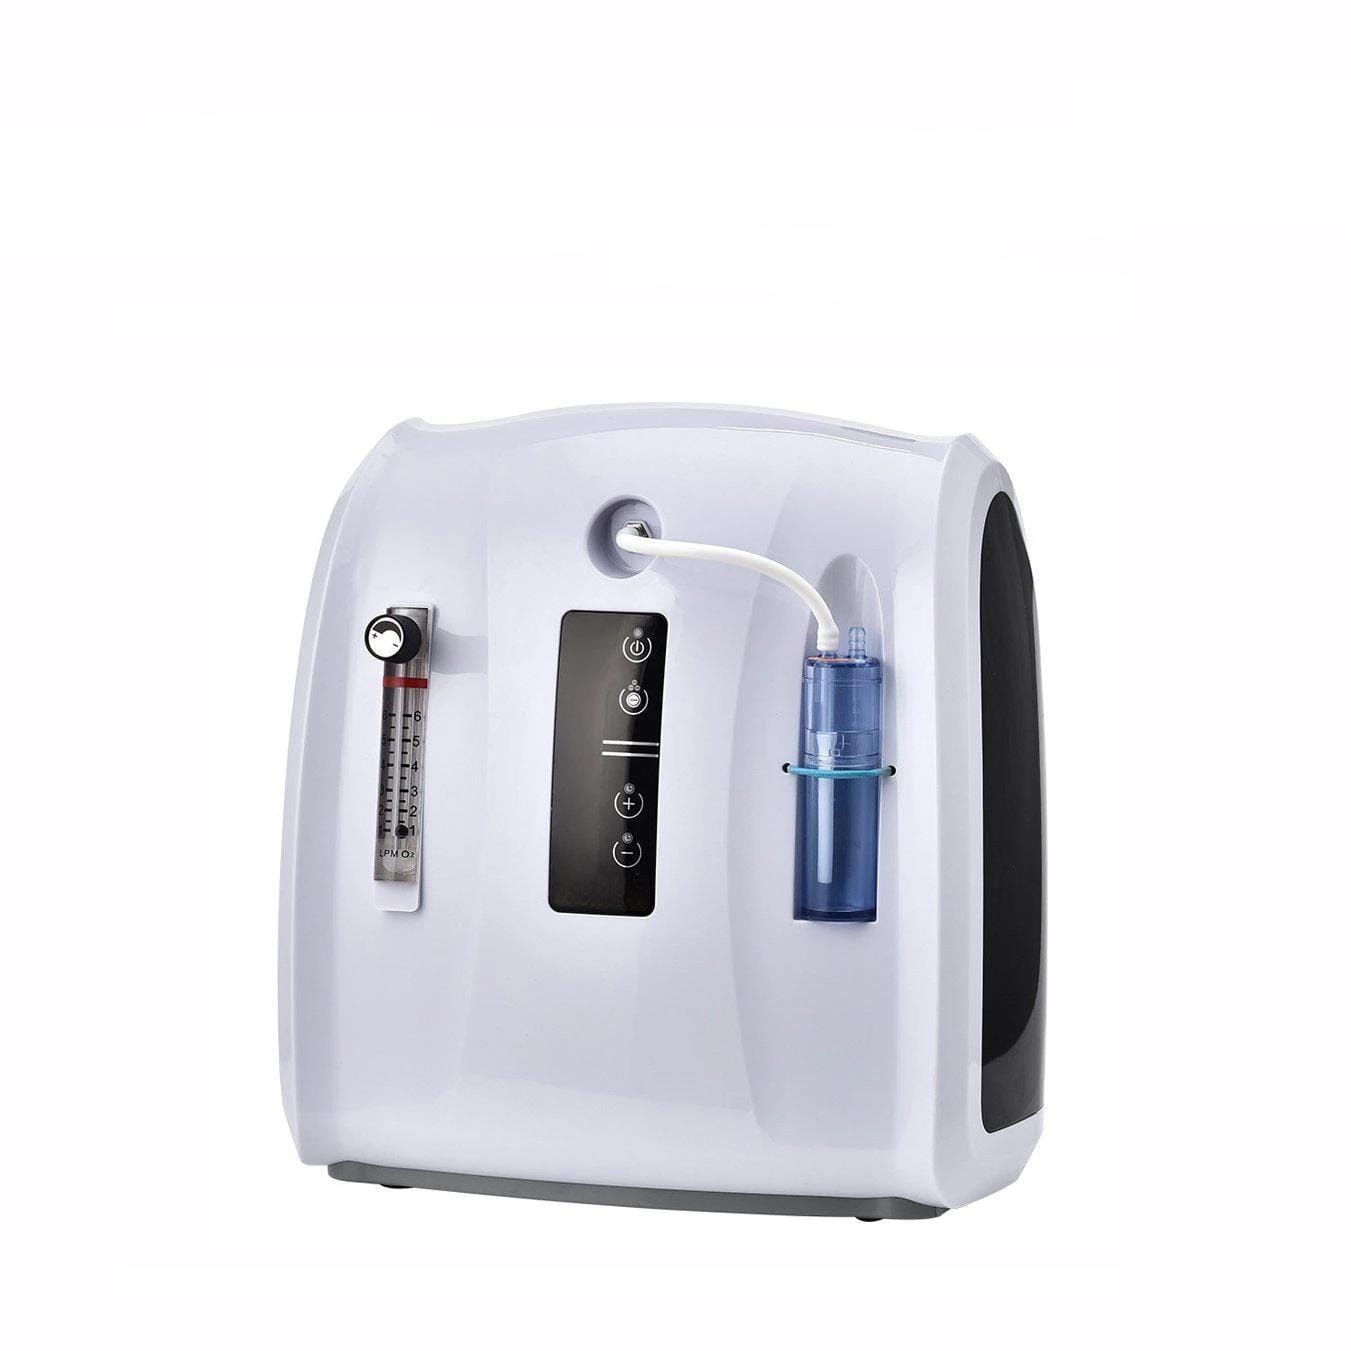 6-liter-portable-oxygen-concentrator-black-friday-2020-sales-online